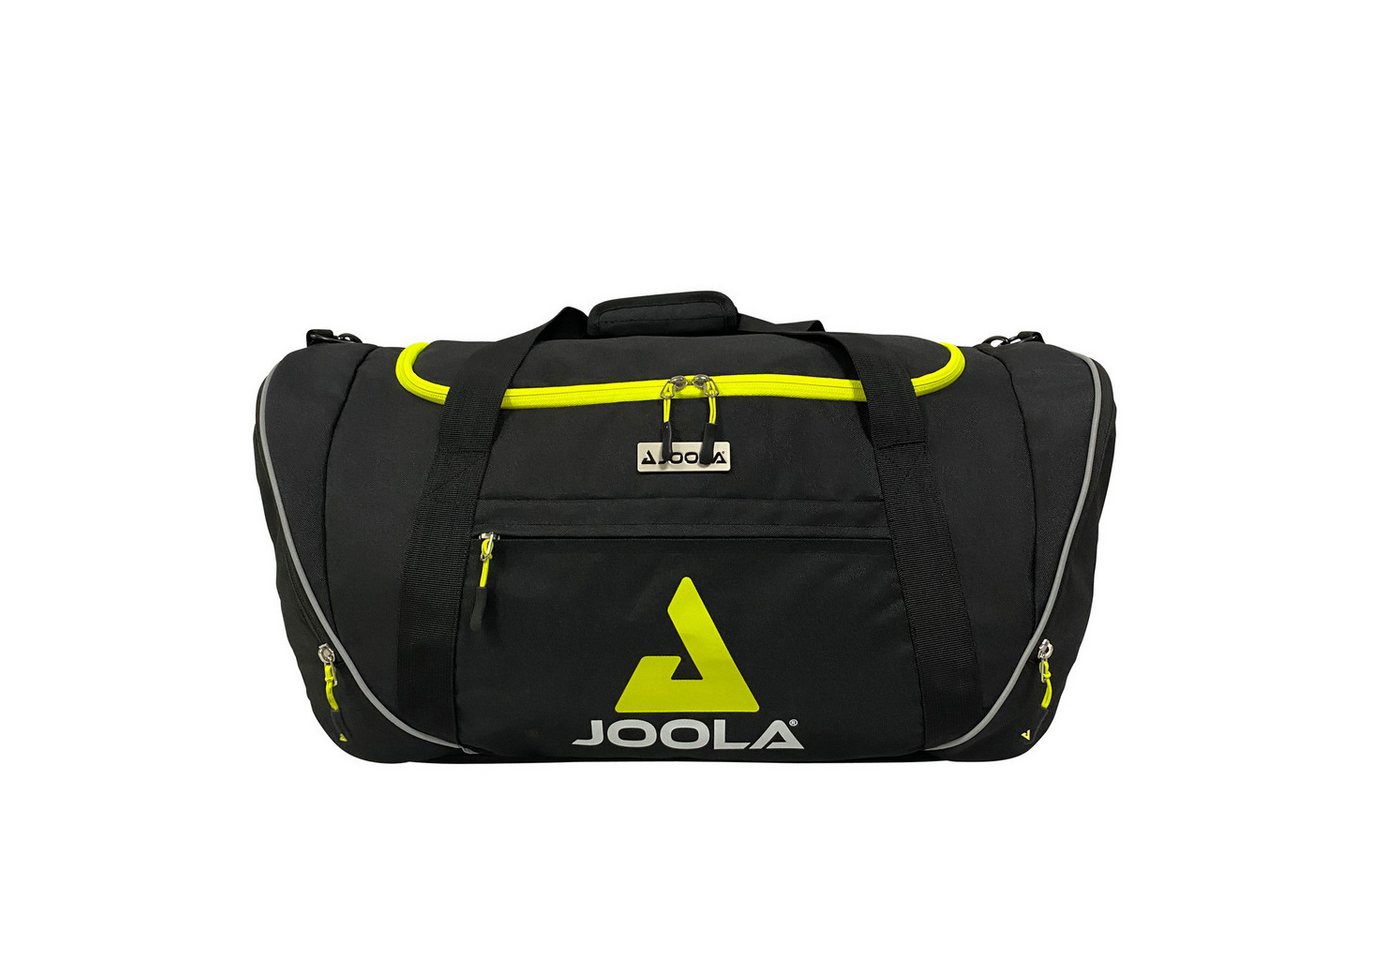 Joola Schlägerhülle Sporttasche Bag Vision II Black, Bag von Joola